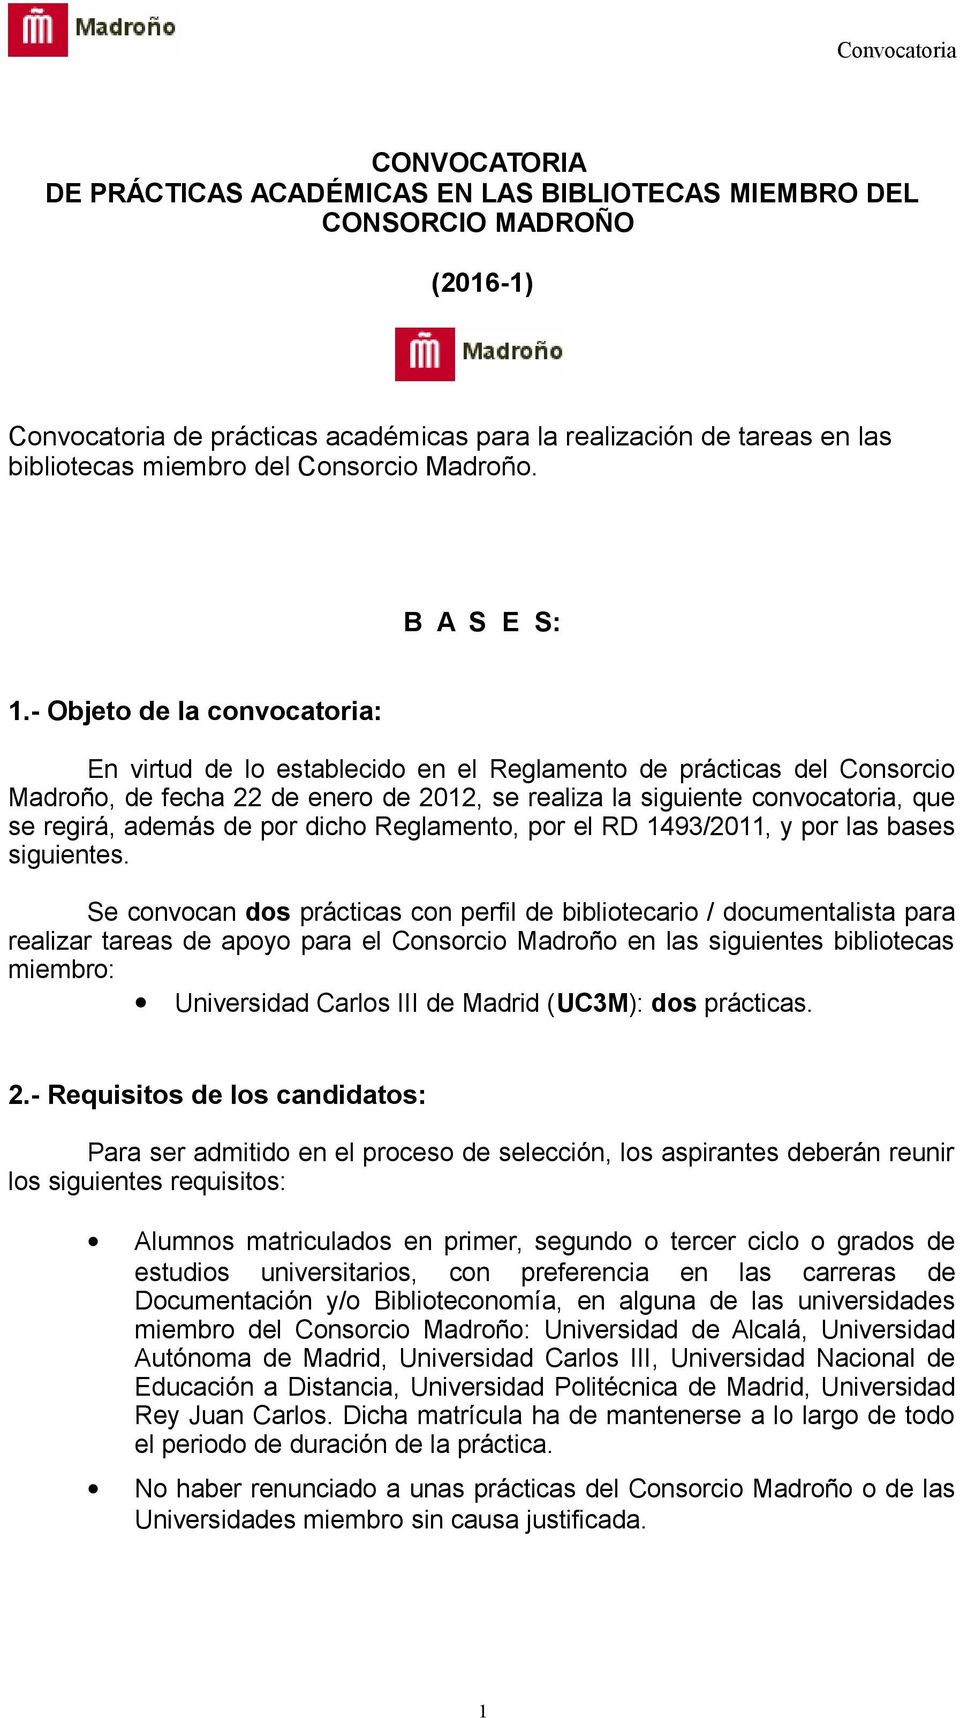 - Objeto de la convocatoria: En virtud de lo establecido en el Reglamento de prácticas del Consorcio Madroño, de fecha 22 de enero de 2012, se realiza la siguiente convocatoria, que se regirá, además